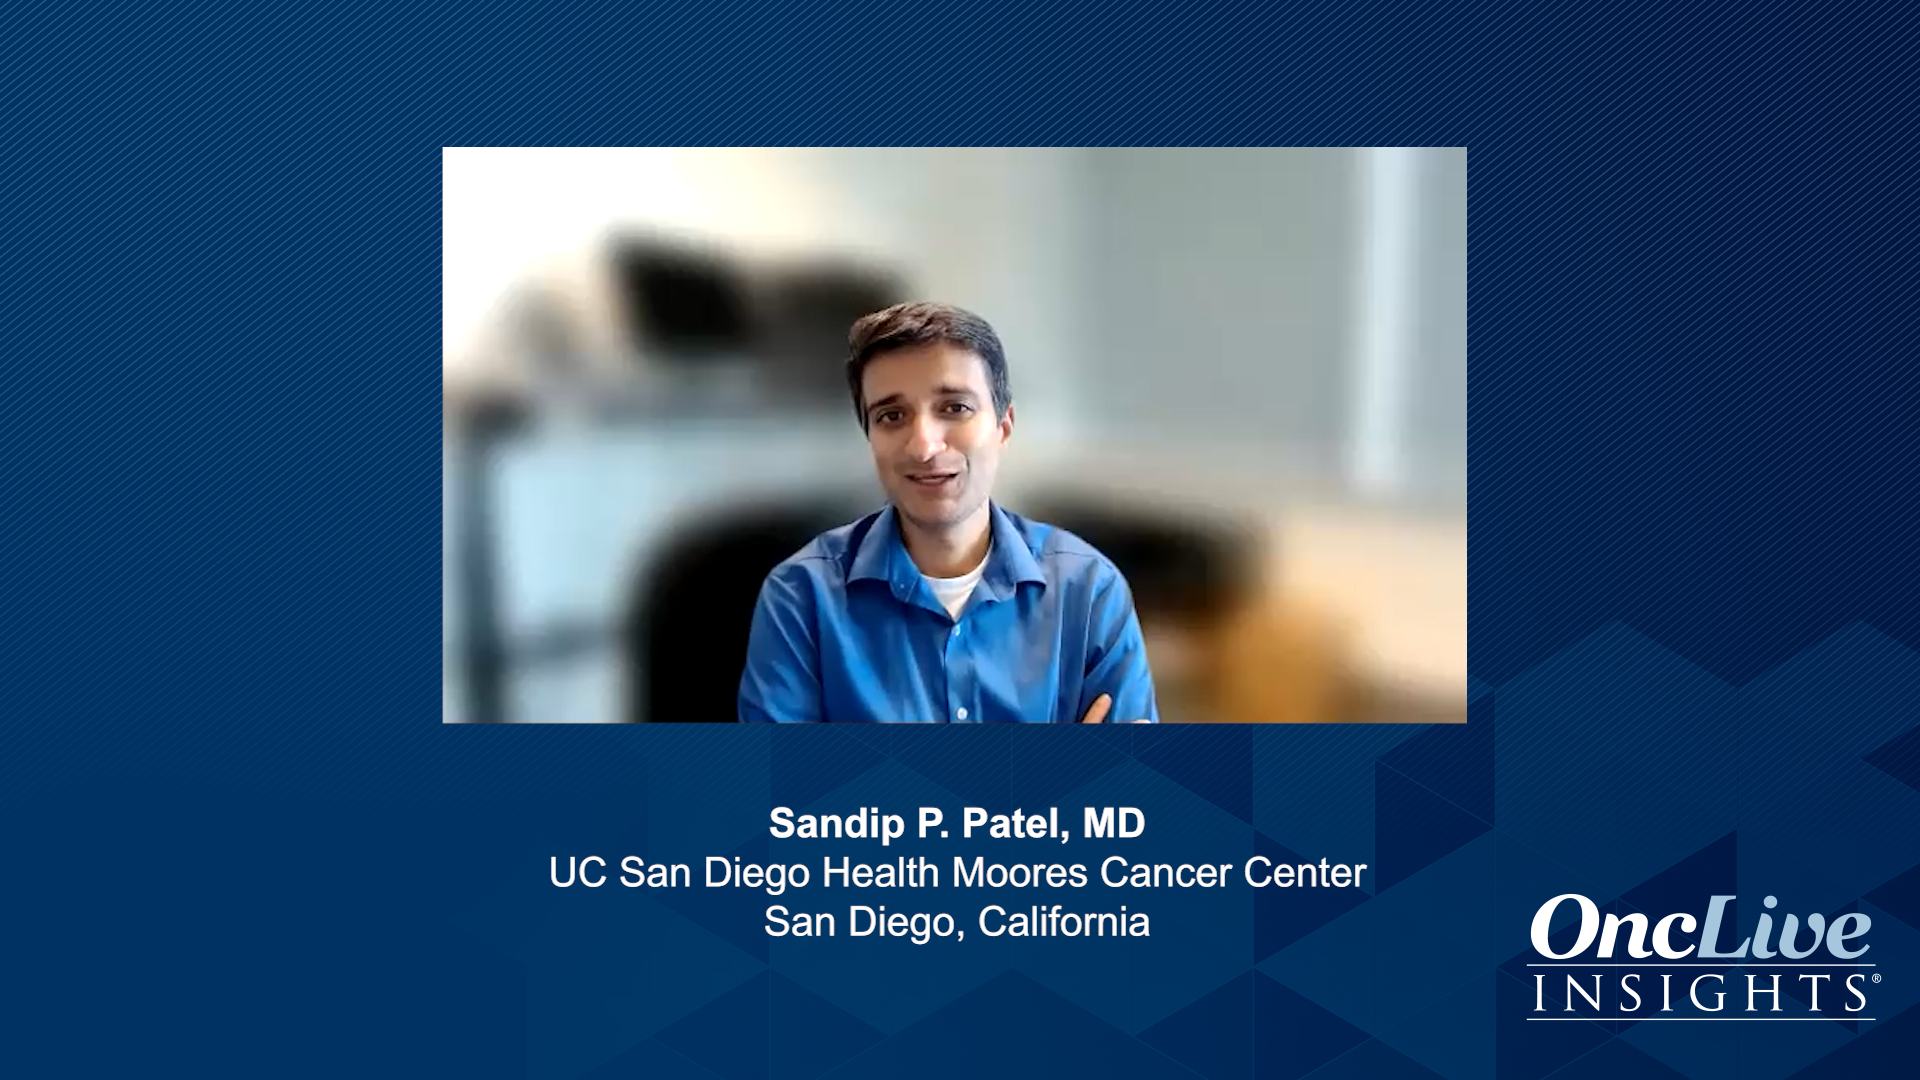 Sandip P. Patel, MD, an expert on lung cancer